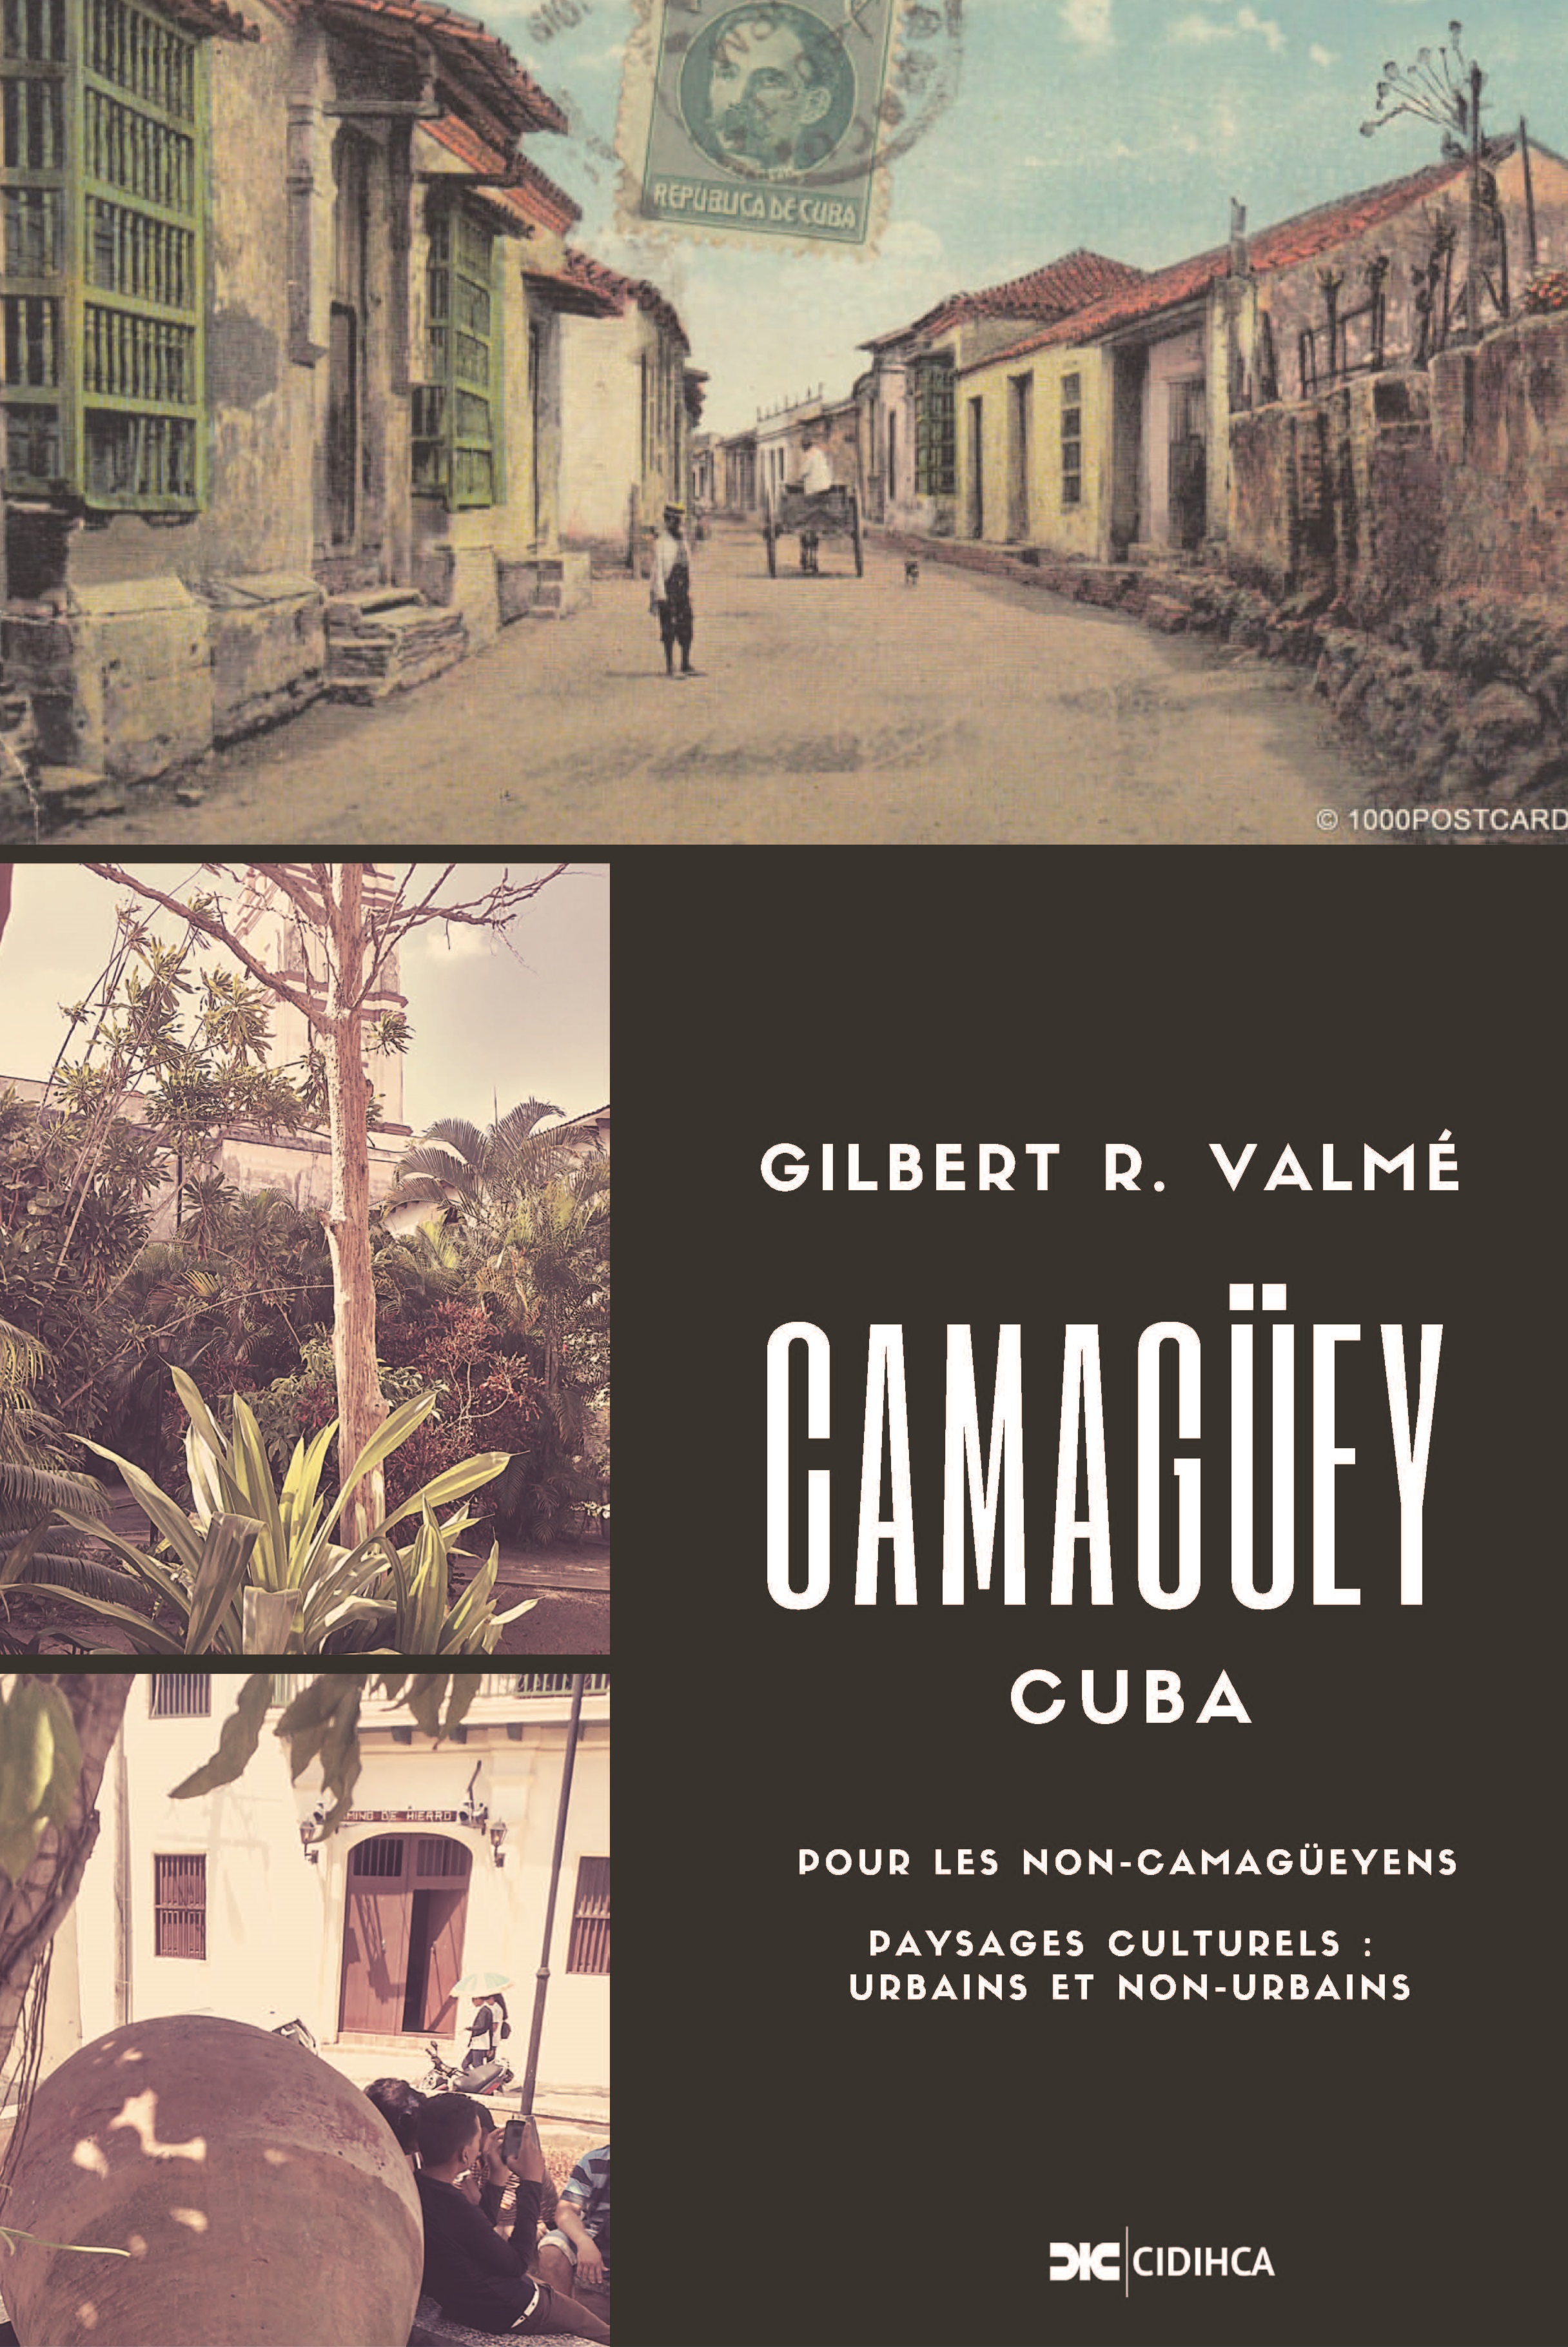 Camagüey (Cuba)
Pour les non-Camagüeyens
Paysages Culturels: Urbains et Non-Urbains
